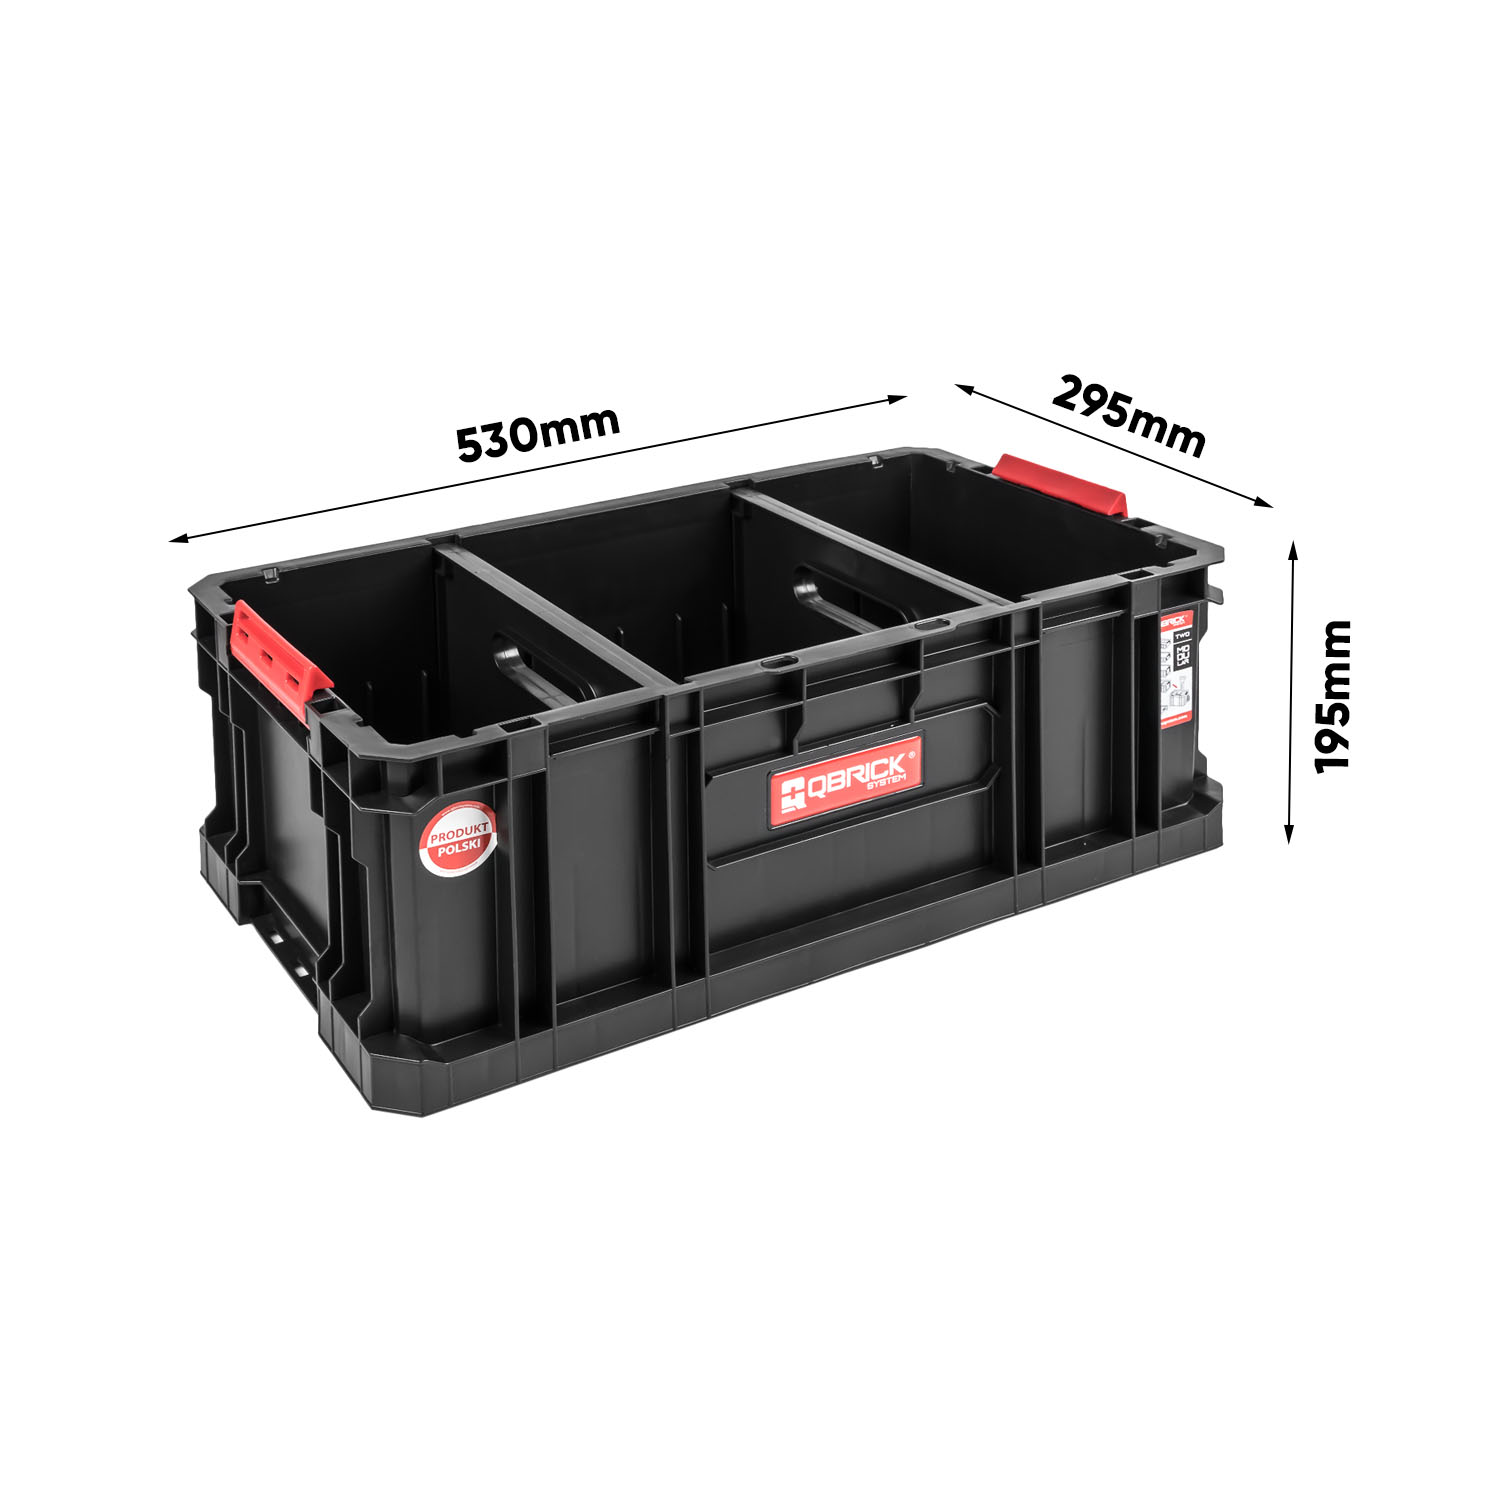 Wymiary Werkstattcontainer QS Two Box 200 Flex (1)